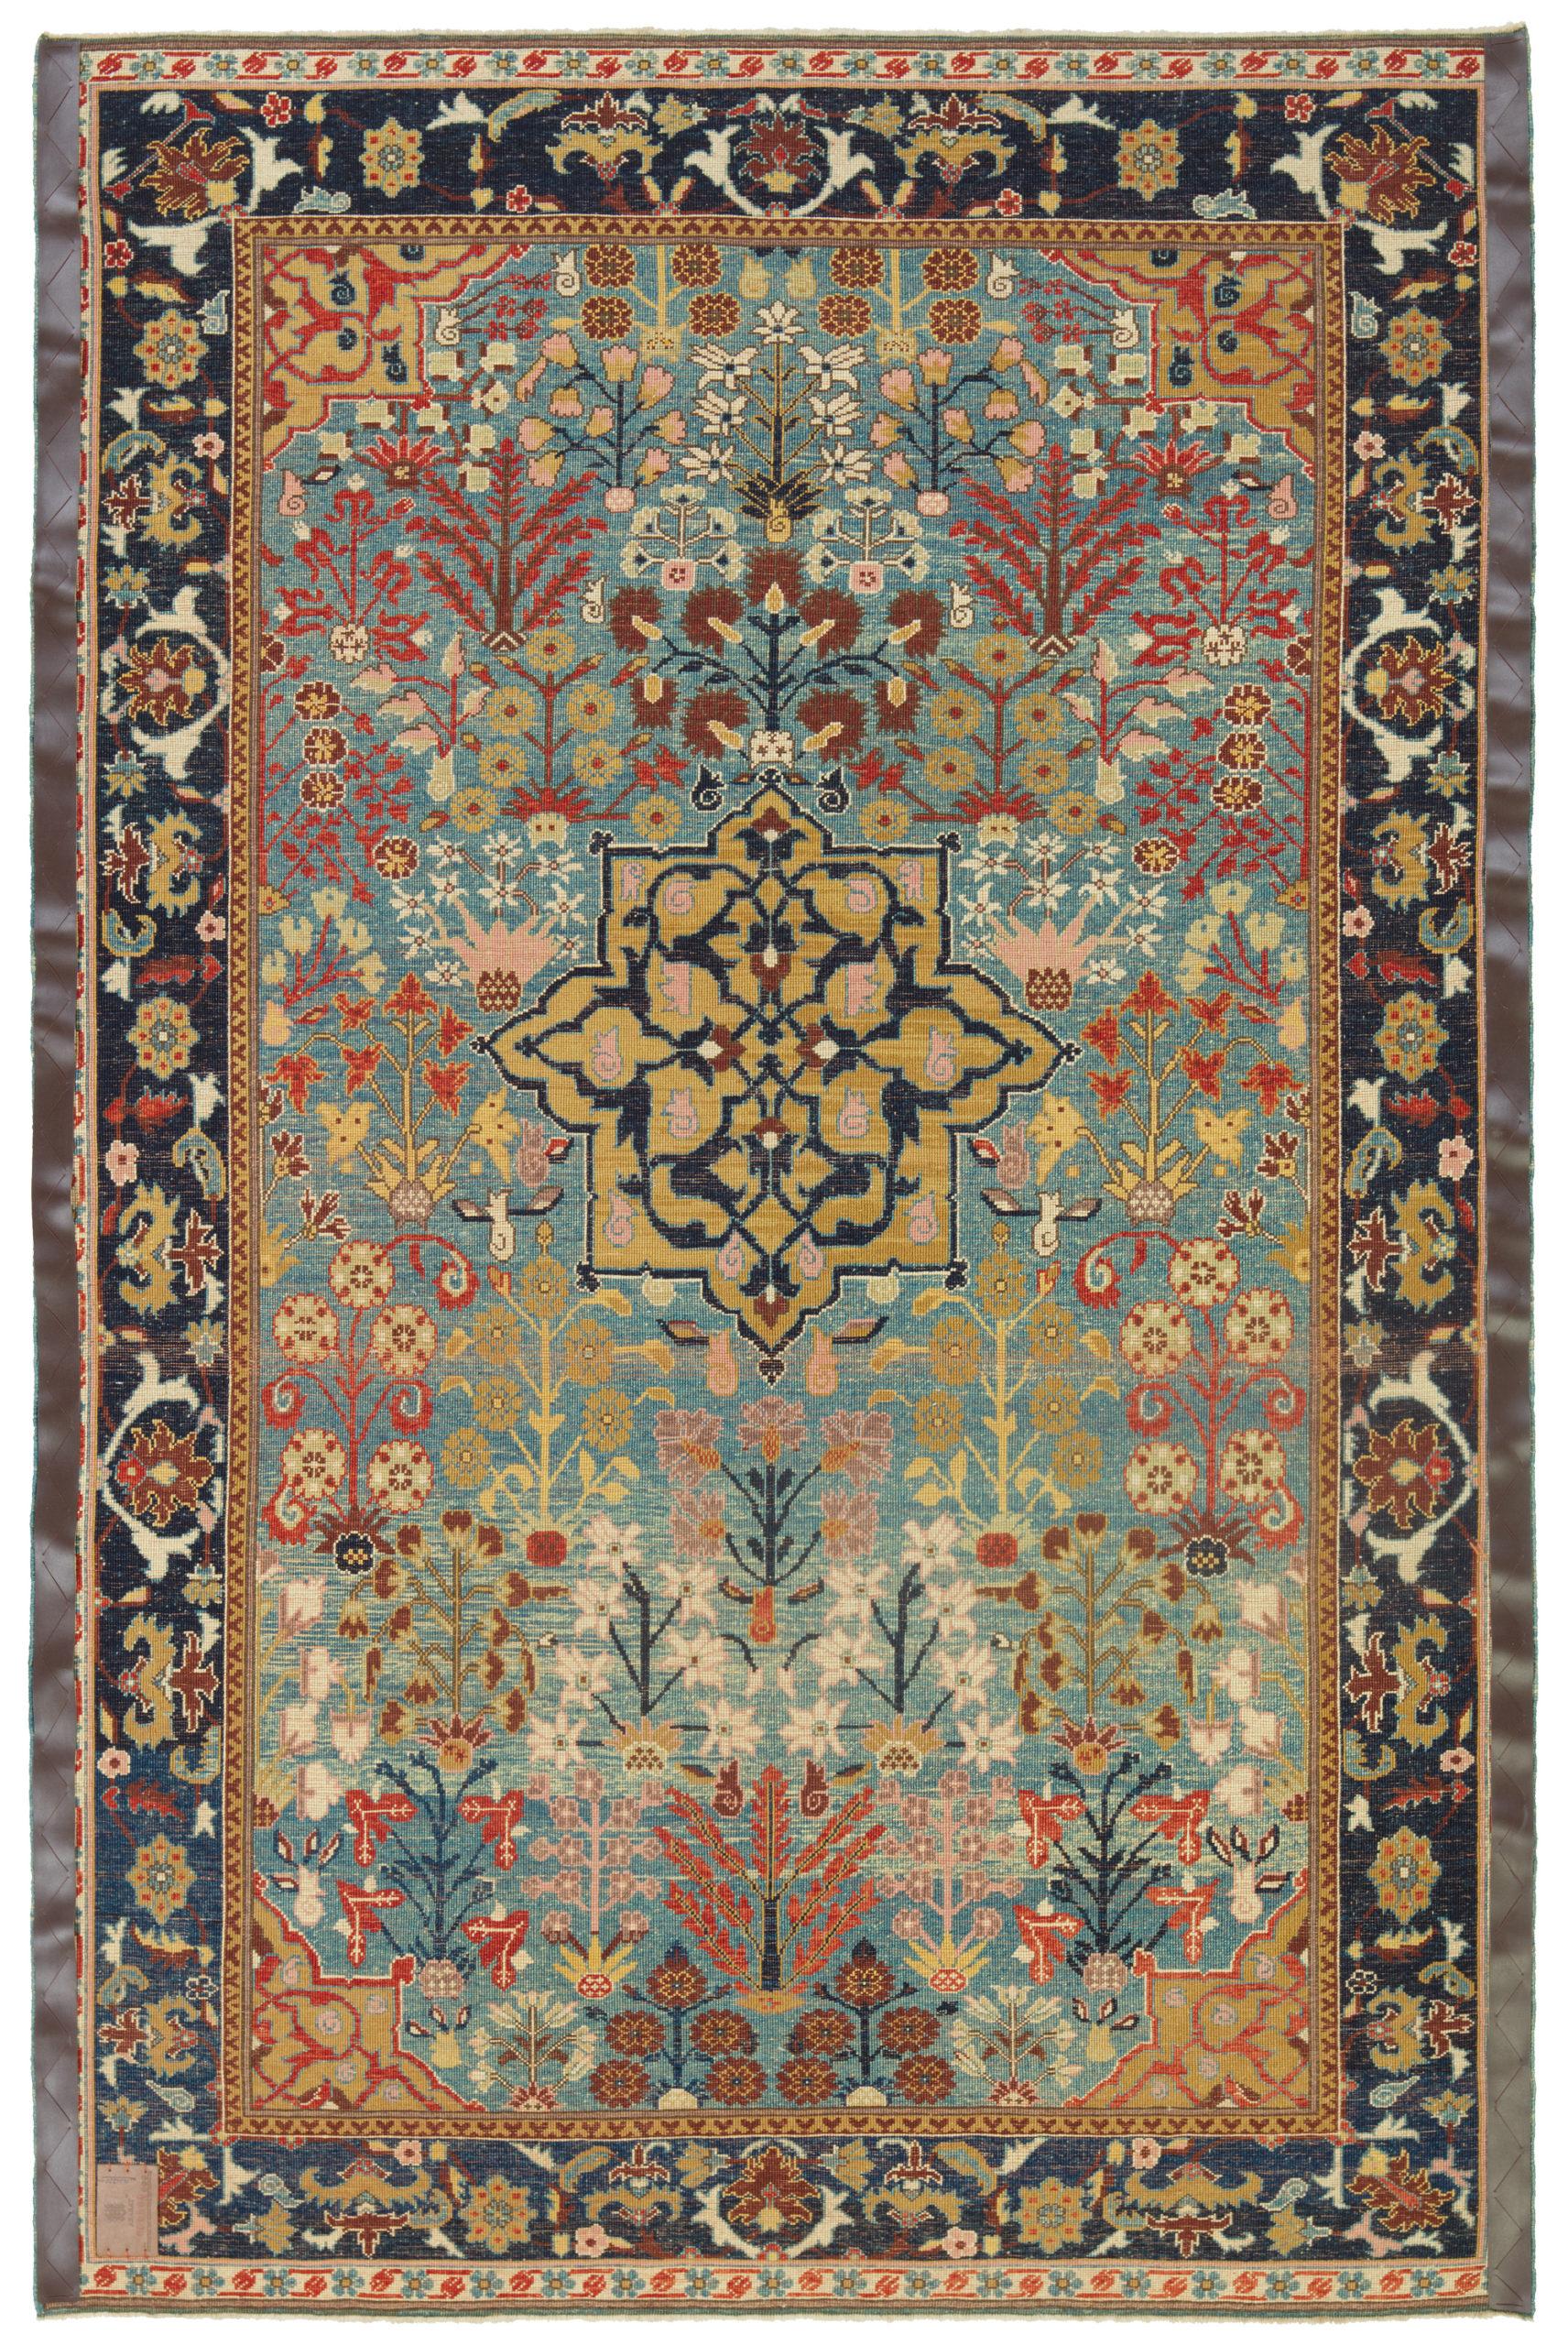 Die Designquelle des Teppichs stammt aus dem Buch How to Read - Islamic Carpets, Walter B. Denny, The Metropolitan Museum of Art, New York 2014 fig.18. Dies ist eine Vasen-Technik mit einem sternförmigen zentralen Medaillon-Teppich-Muster aus dem